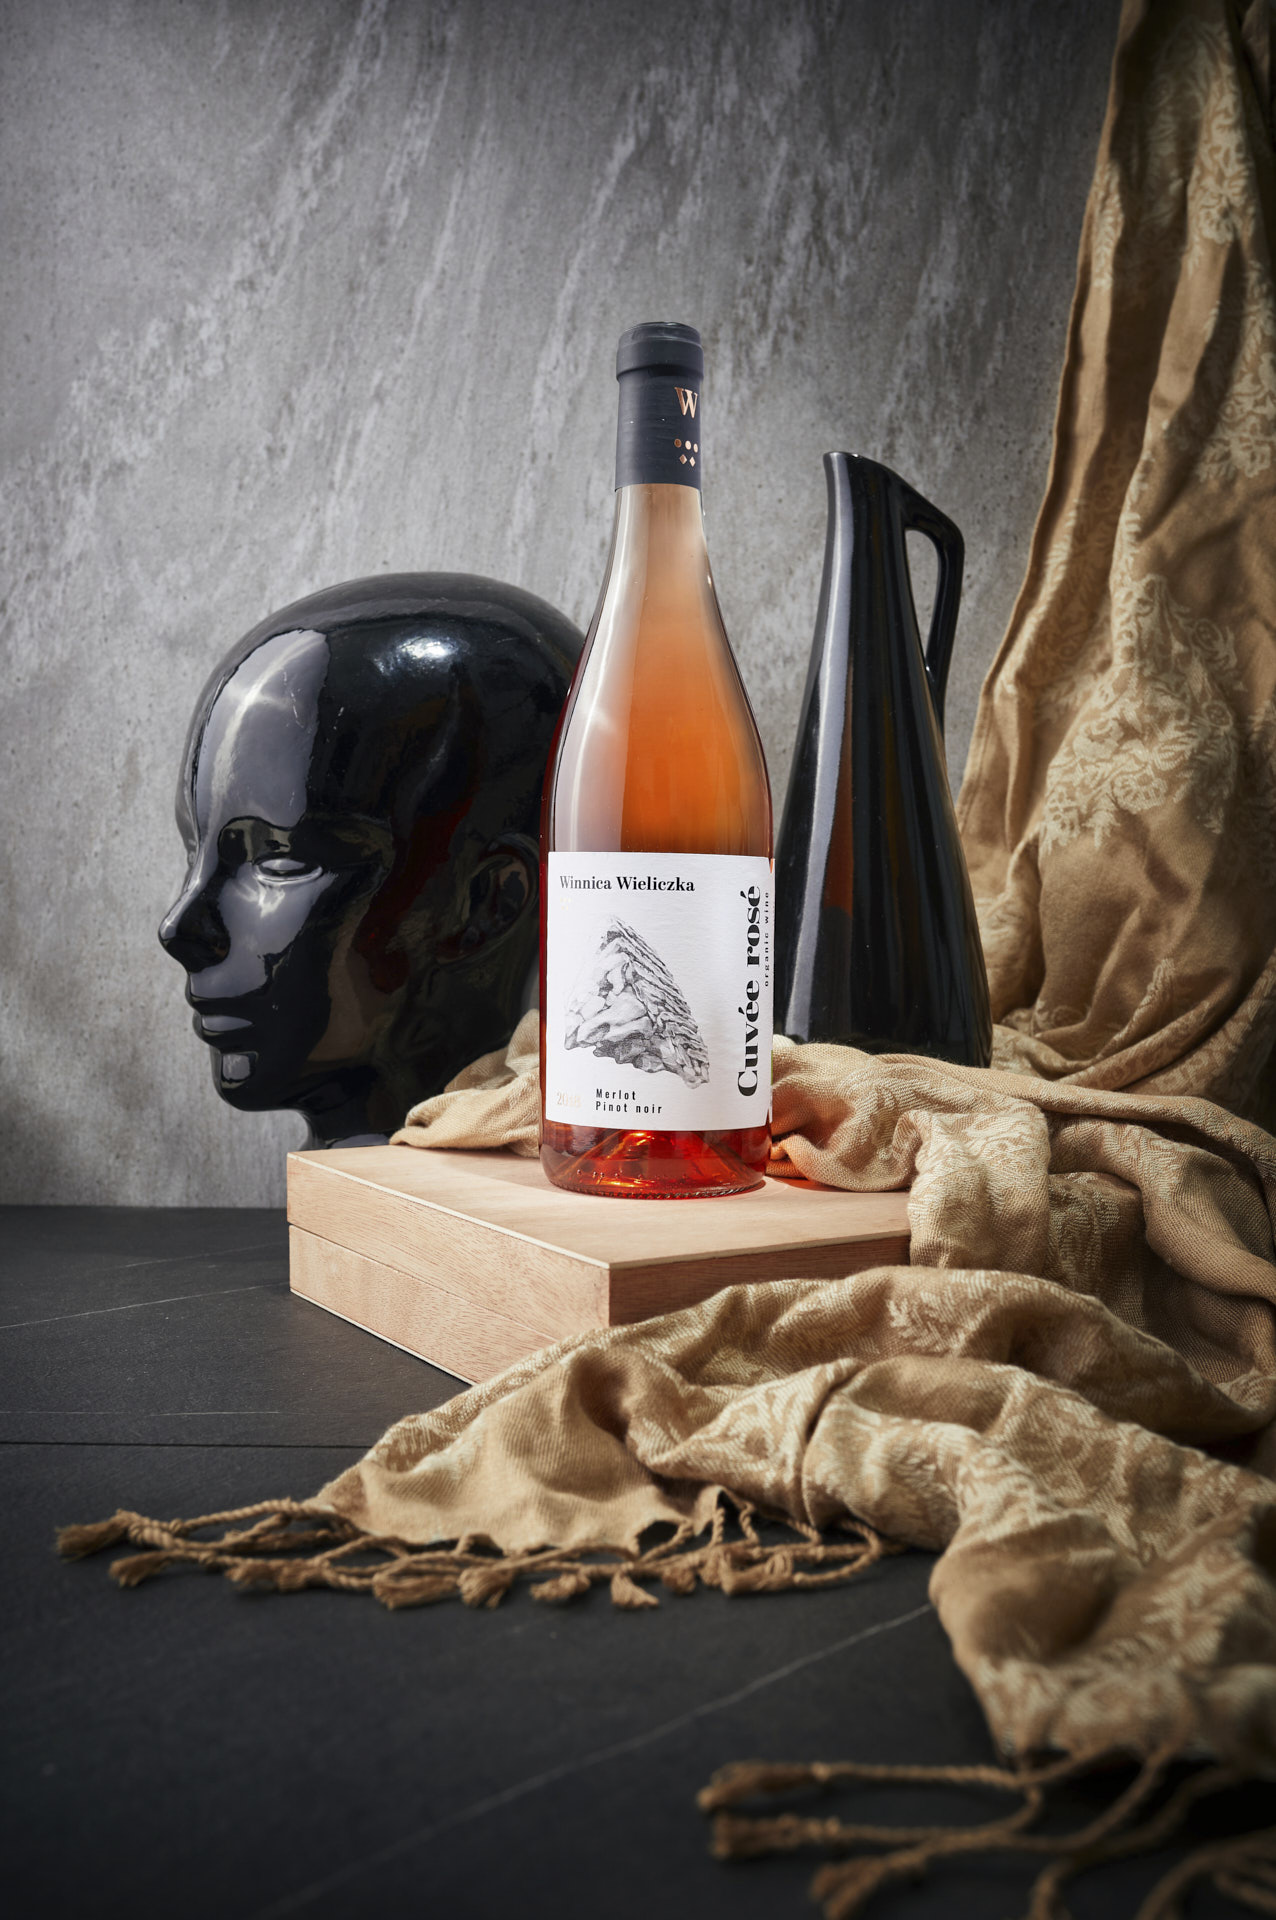 Fotografia reklamowa wina wykonana przez Mateusza Drozda dla Winnicy Wieliczka